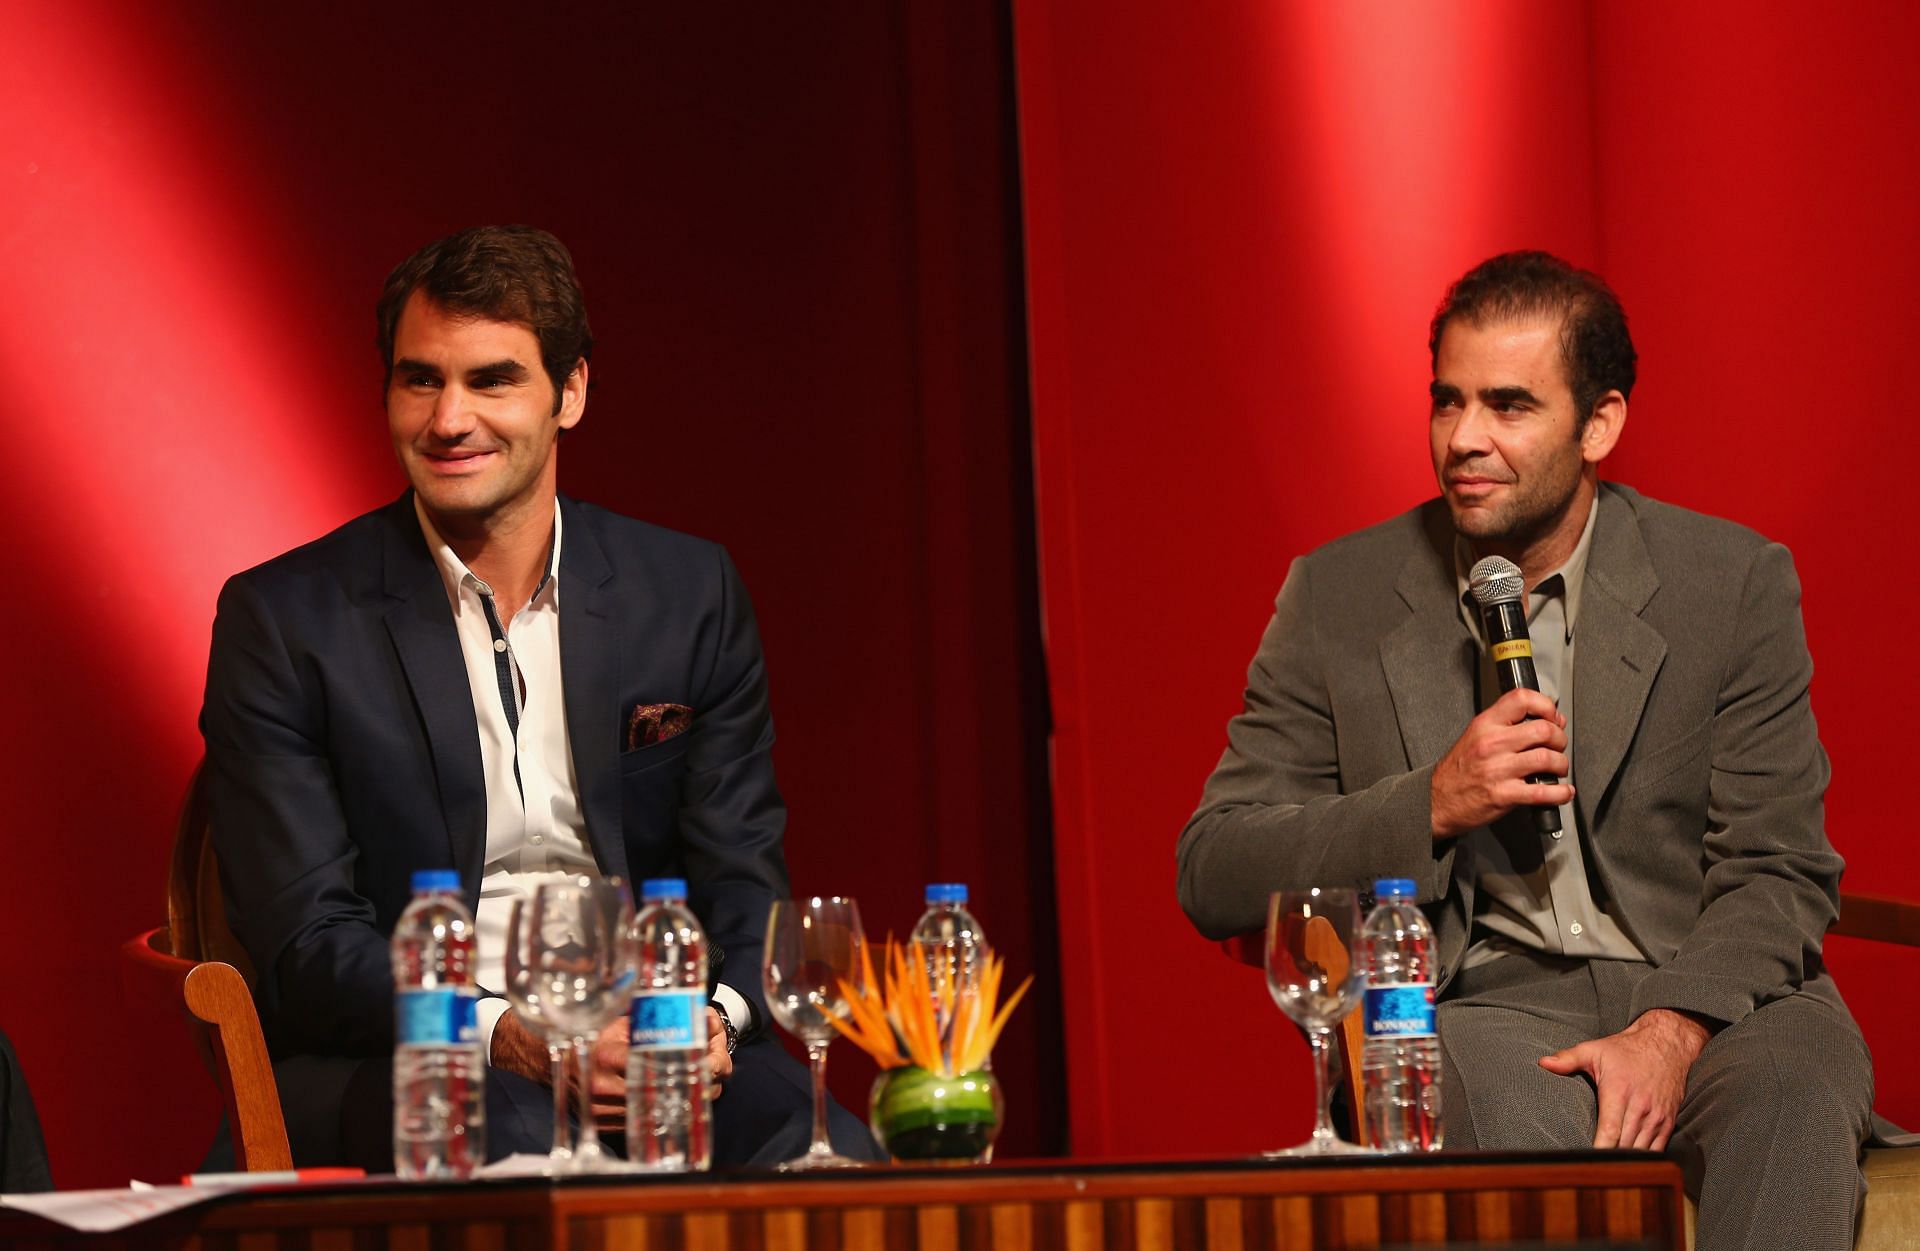 Roger Federer (L) and Pete Sampras